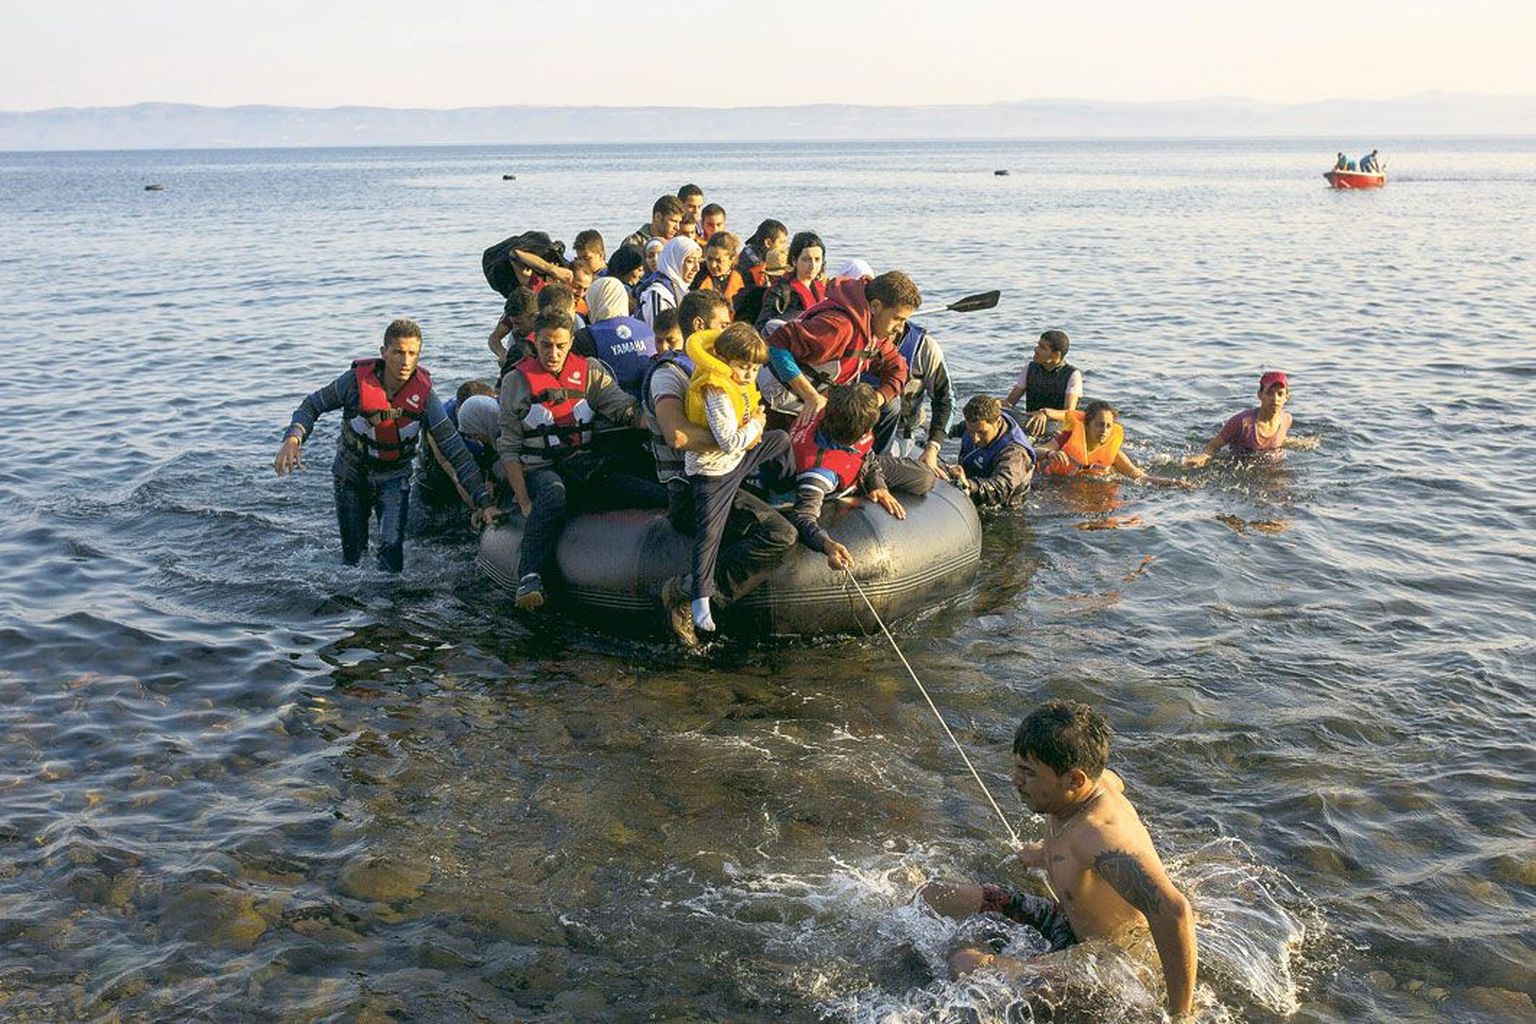 Esmaspäeval saabus Kreeka saarele Lesbosele kaks paati, mis olid üle koormatud Süüria ja Afganistani põgenikega.